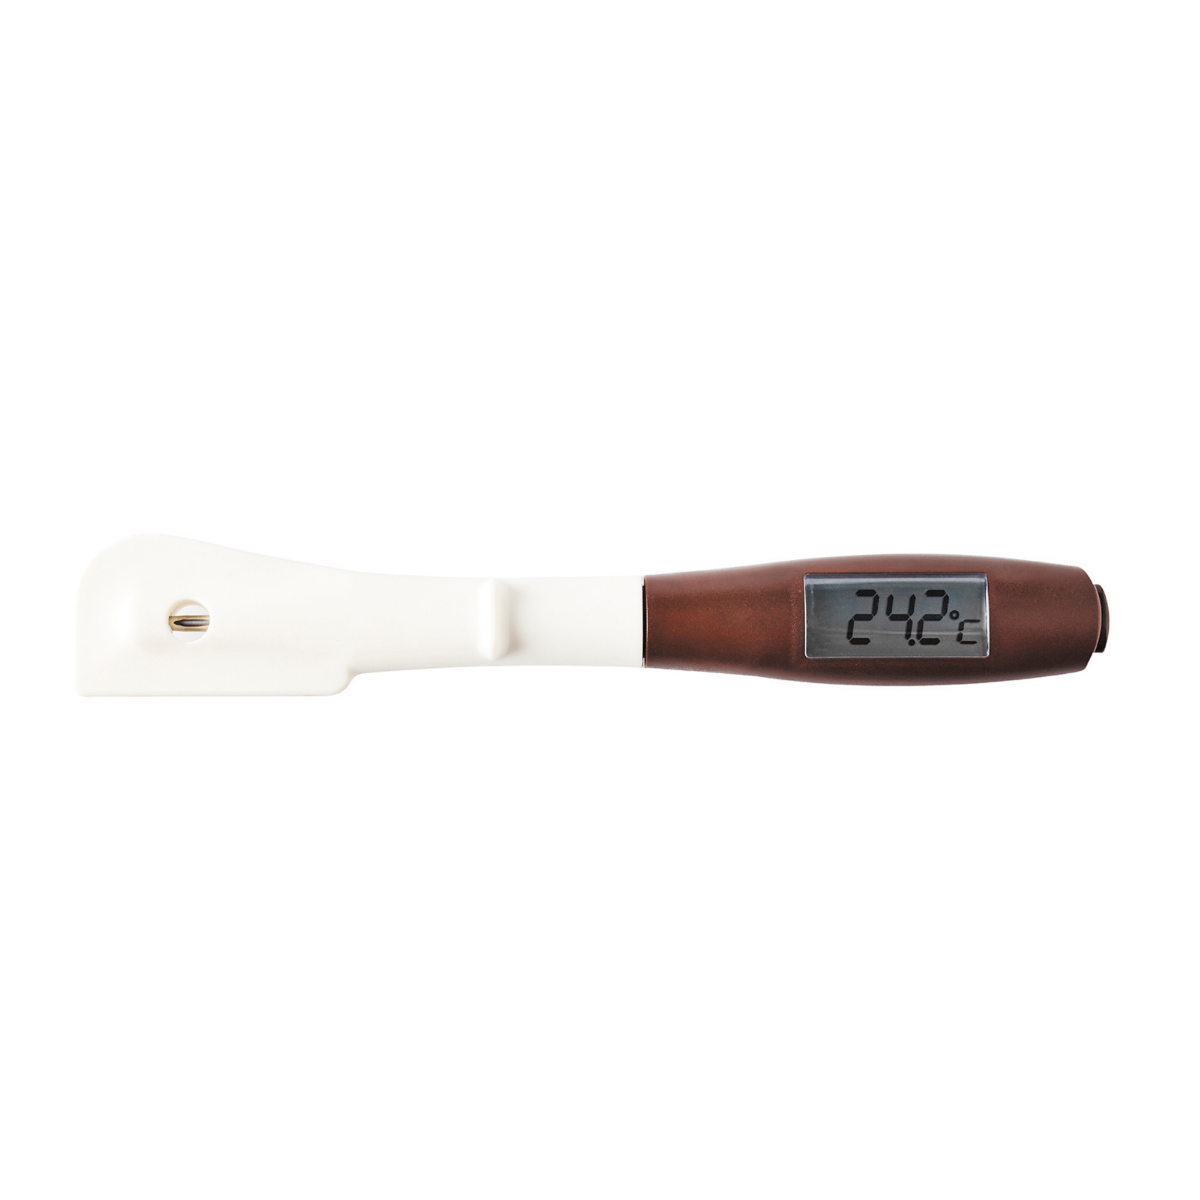 Thermomètre à chocolat et thermomètre à coeur - Thermomètre hybride -  Spatule en silicone - Piles incluses.